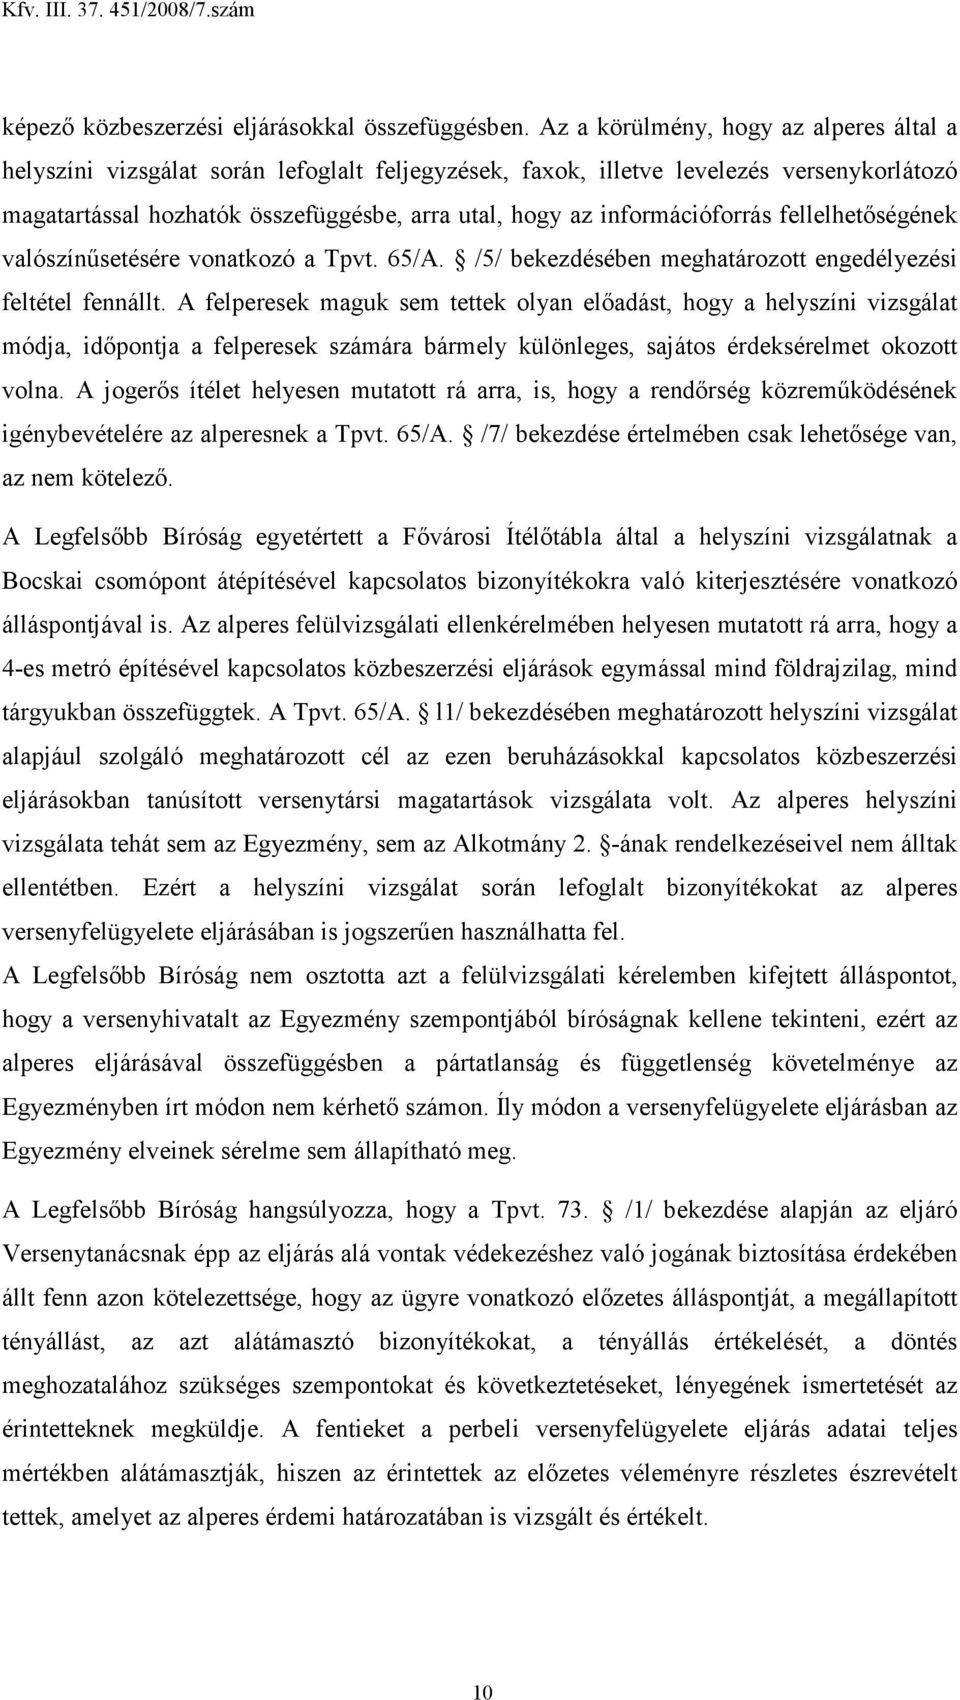 információforrás fellelhetıségének valószínősetésére vonatkozó a Tpvt. 65/A. /5/ bekezdésében meghatározott engedélyezési feltétel fennállt.